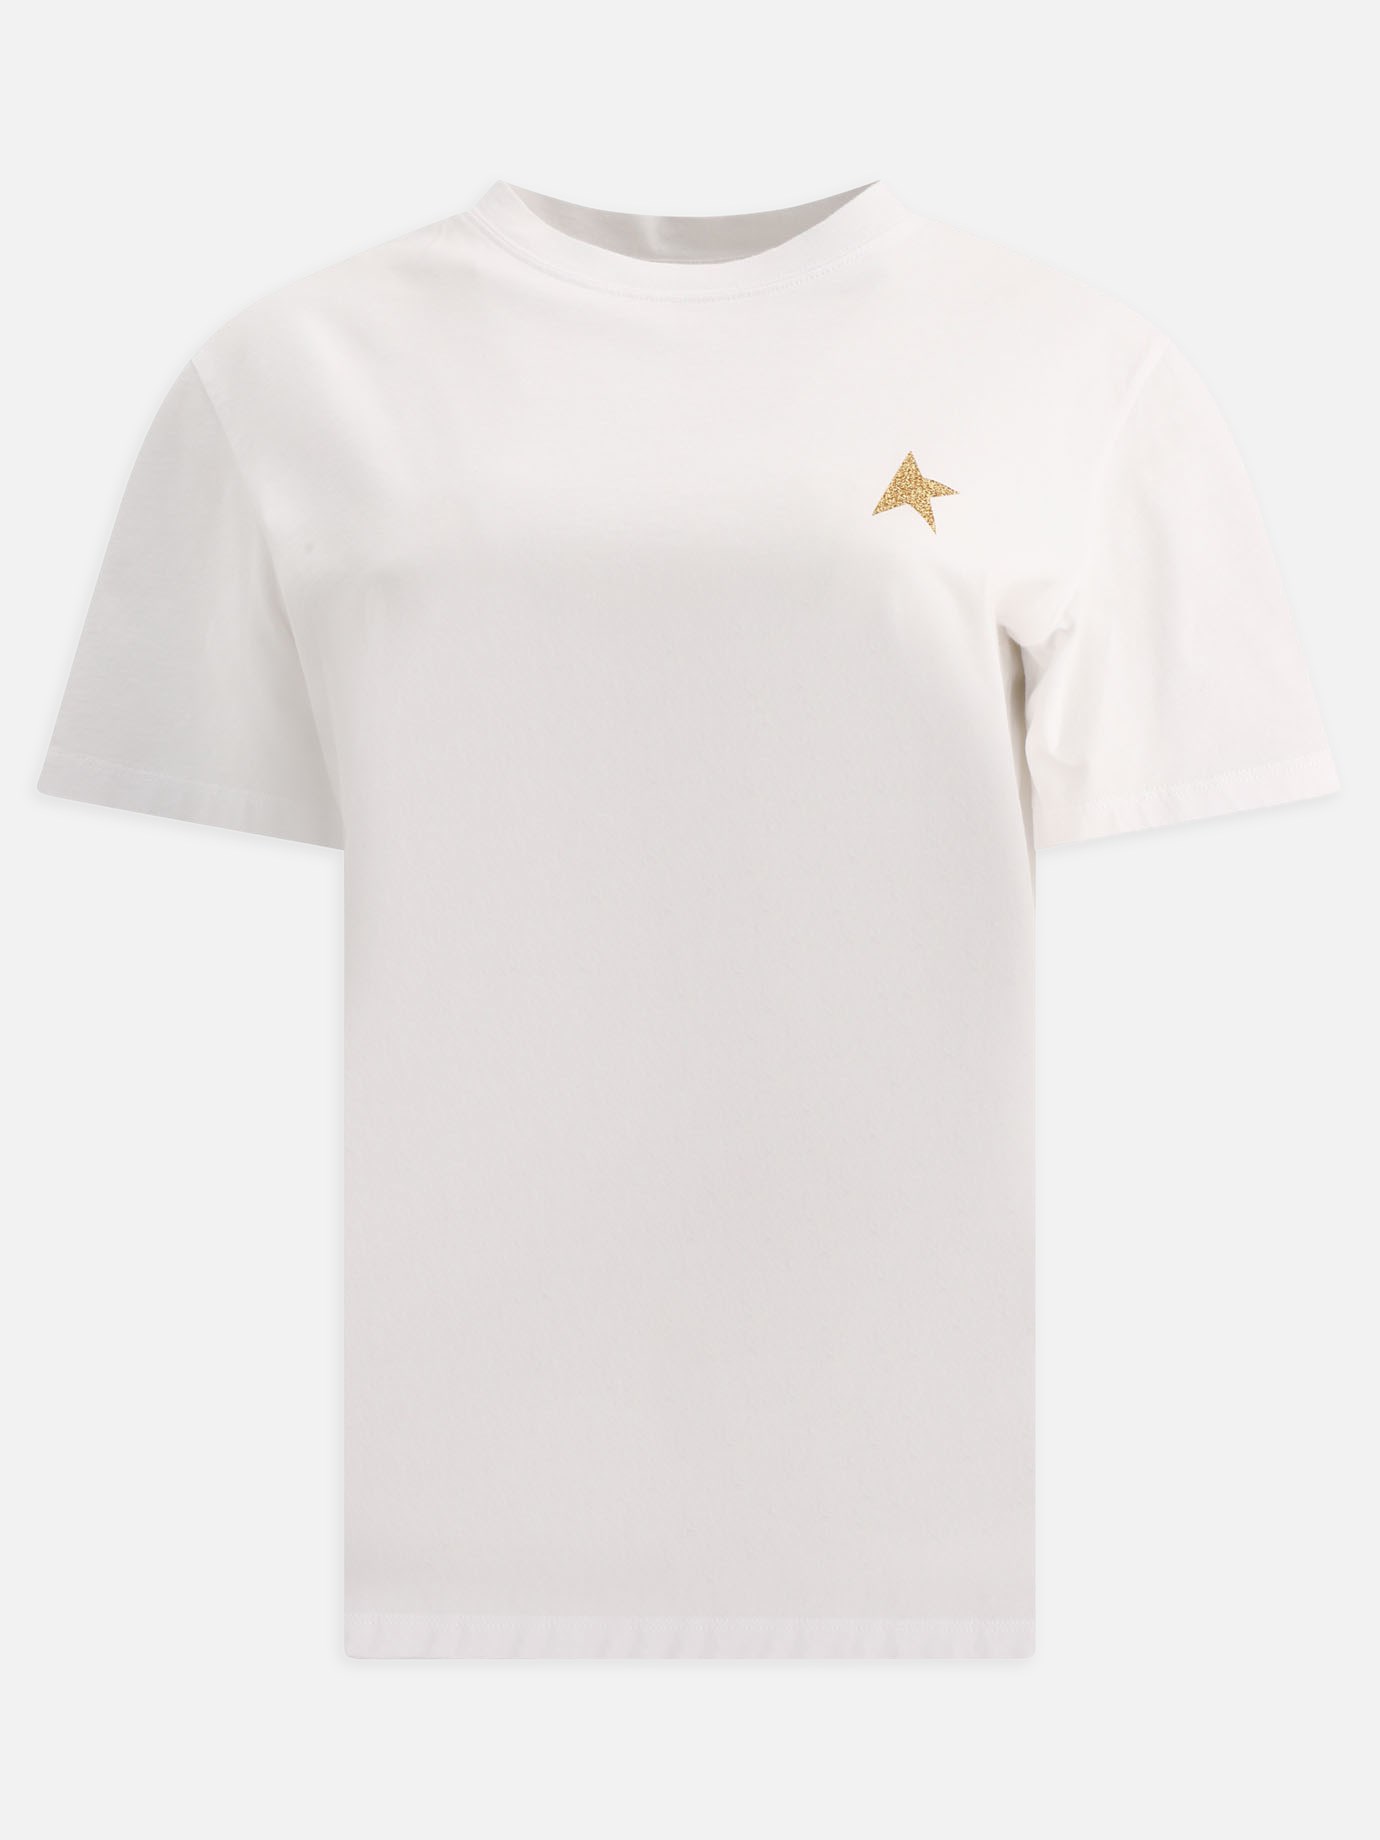  Glittered Star  t-shirtby Golden Goose - 1